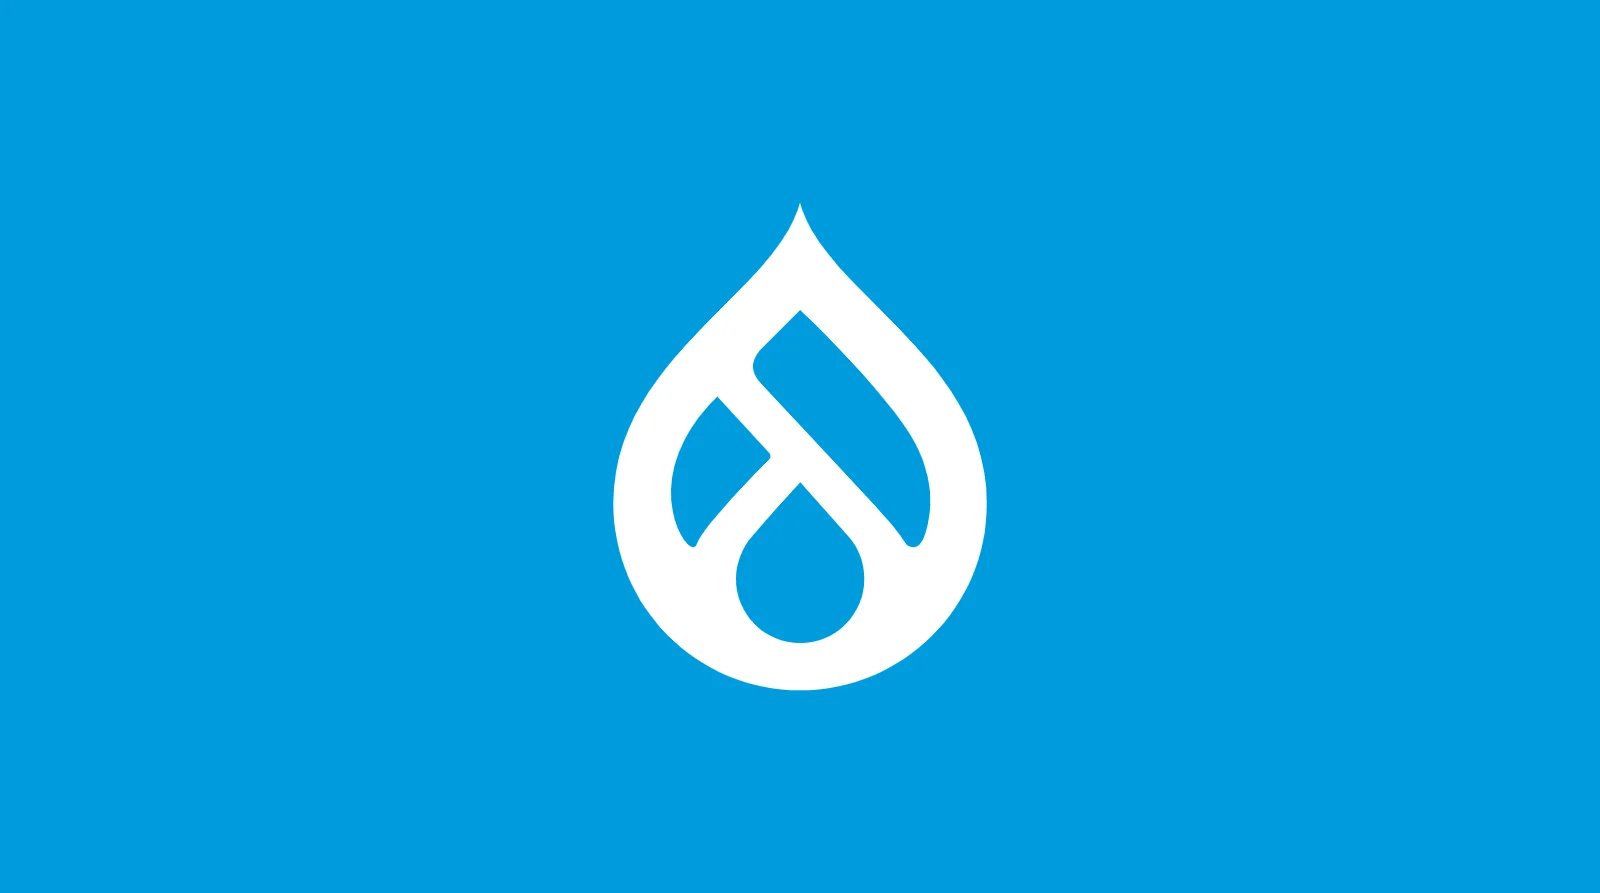 Asset - Drupal logo white azure bg